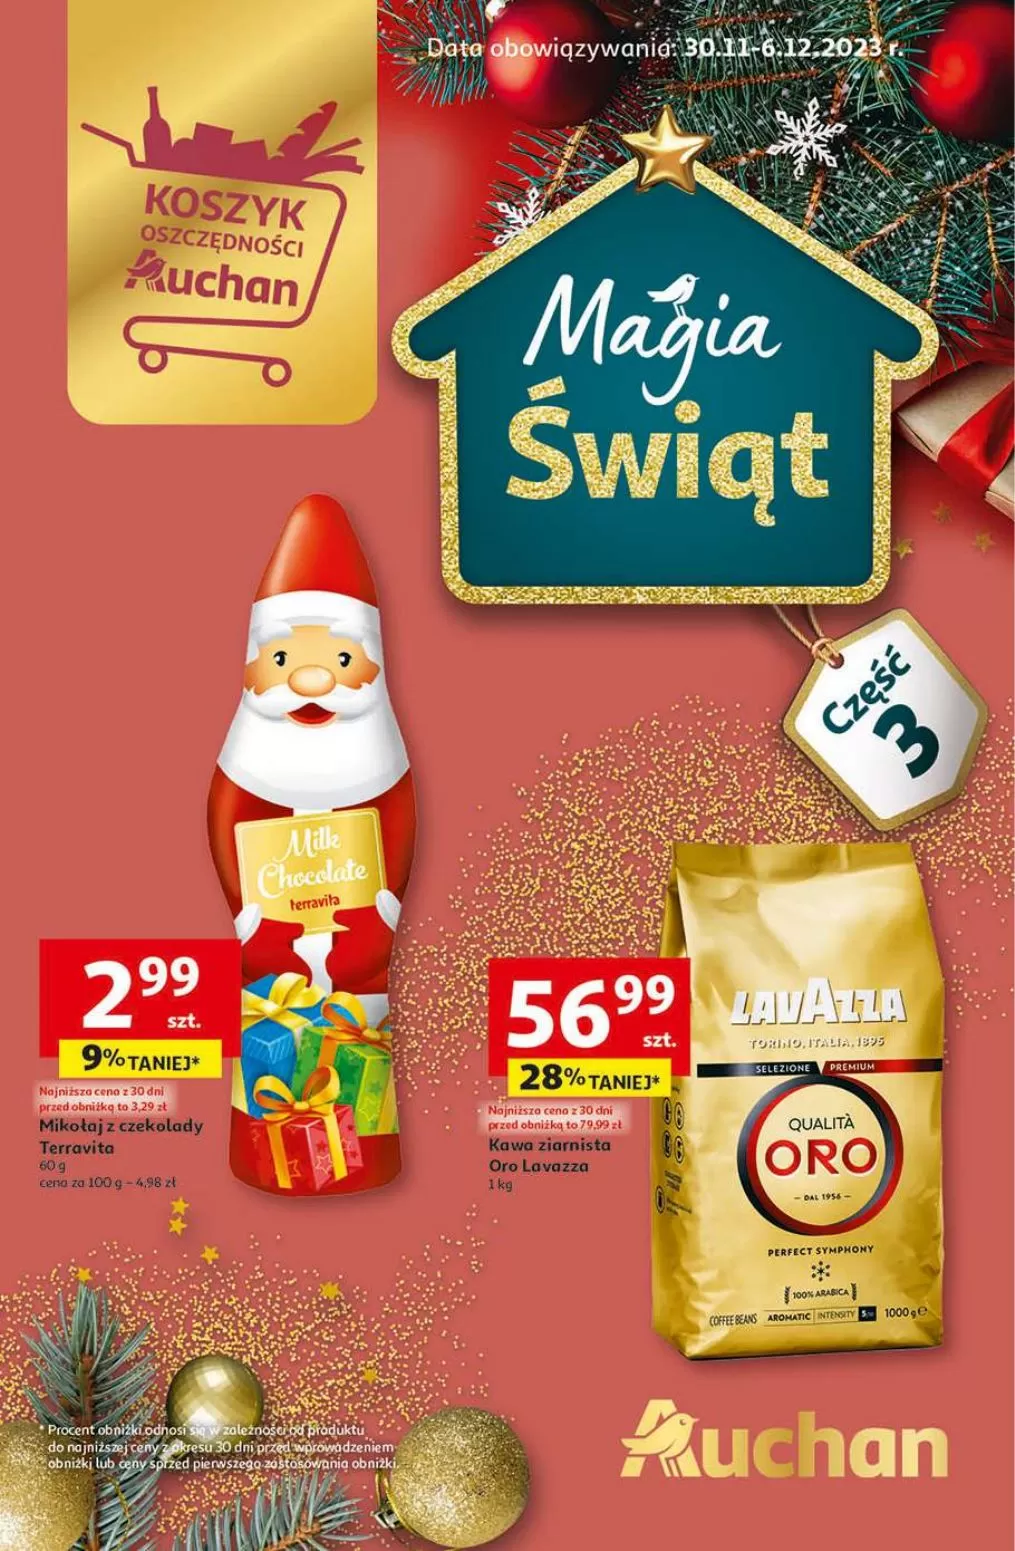 
                        Gazetka promocyjna Auchan. Tytuł: Magia świąt. Oferta obowiązuje: 2023-11-30 - 2023-12-06